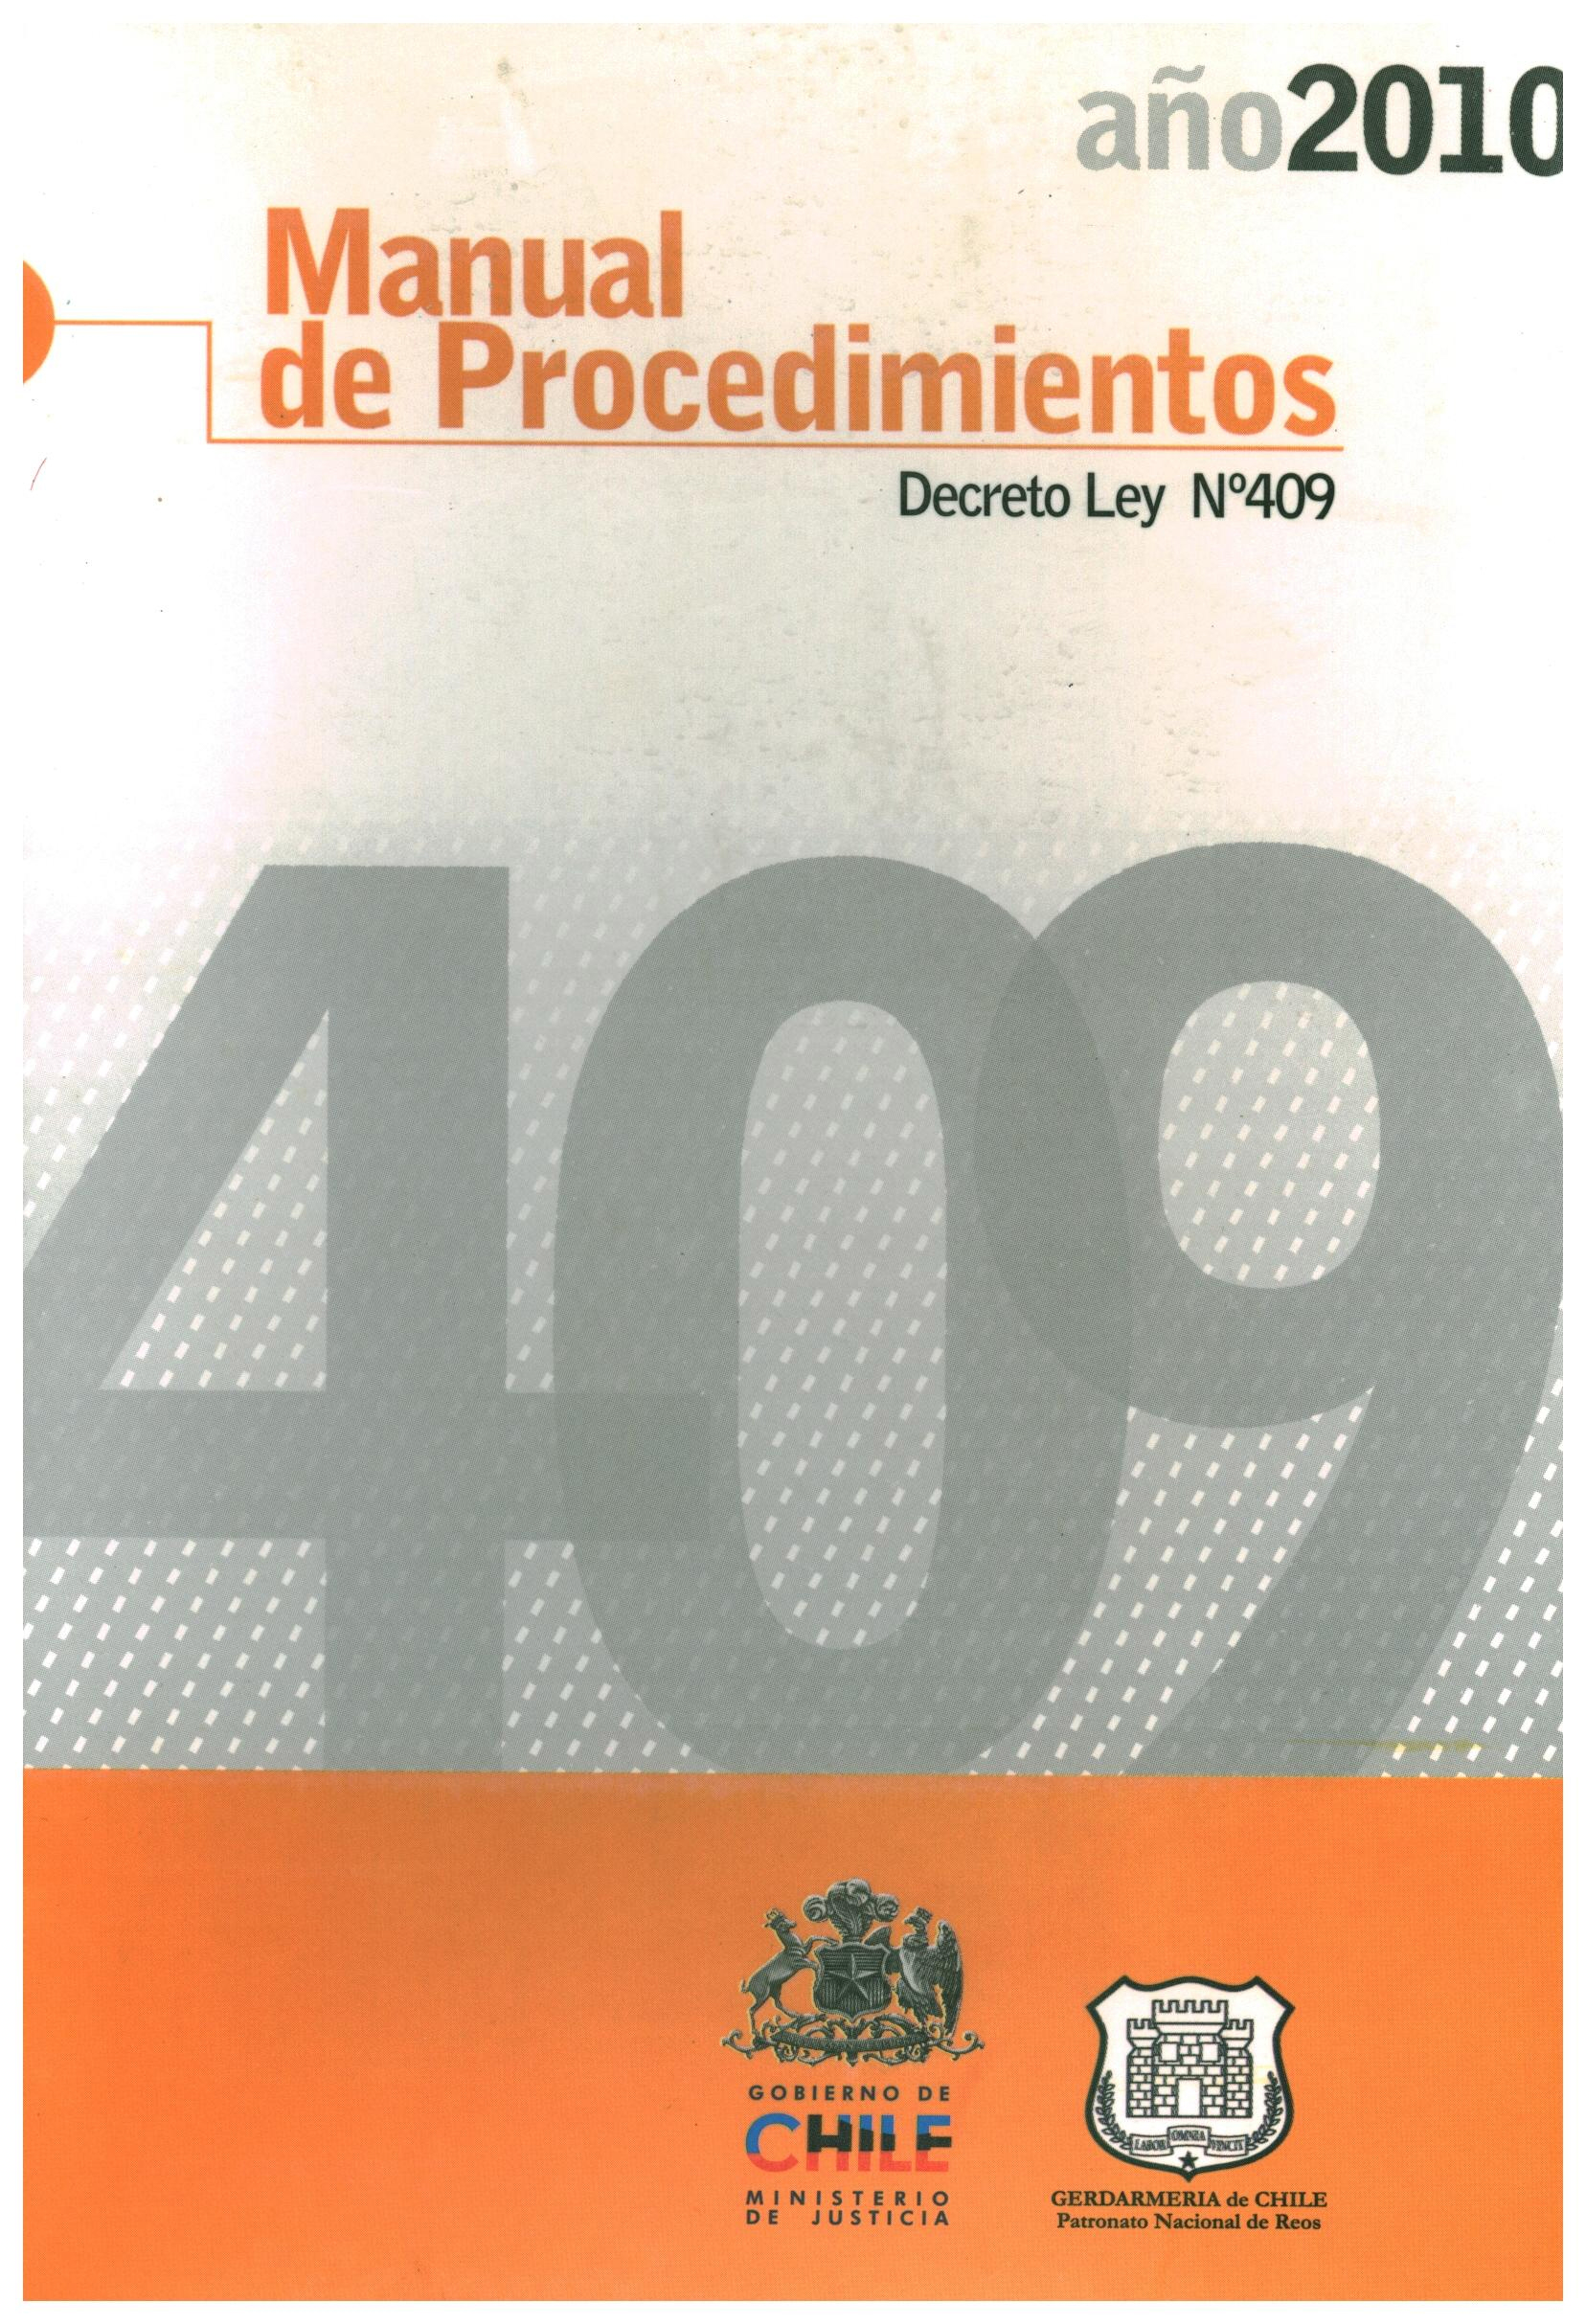 Manual de procedimientos Decreto ley N°409